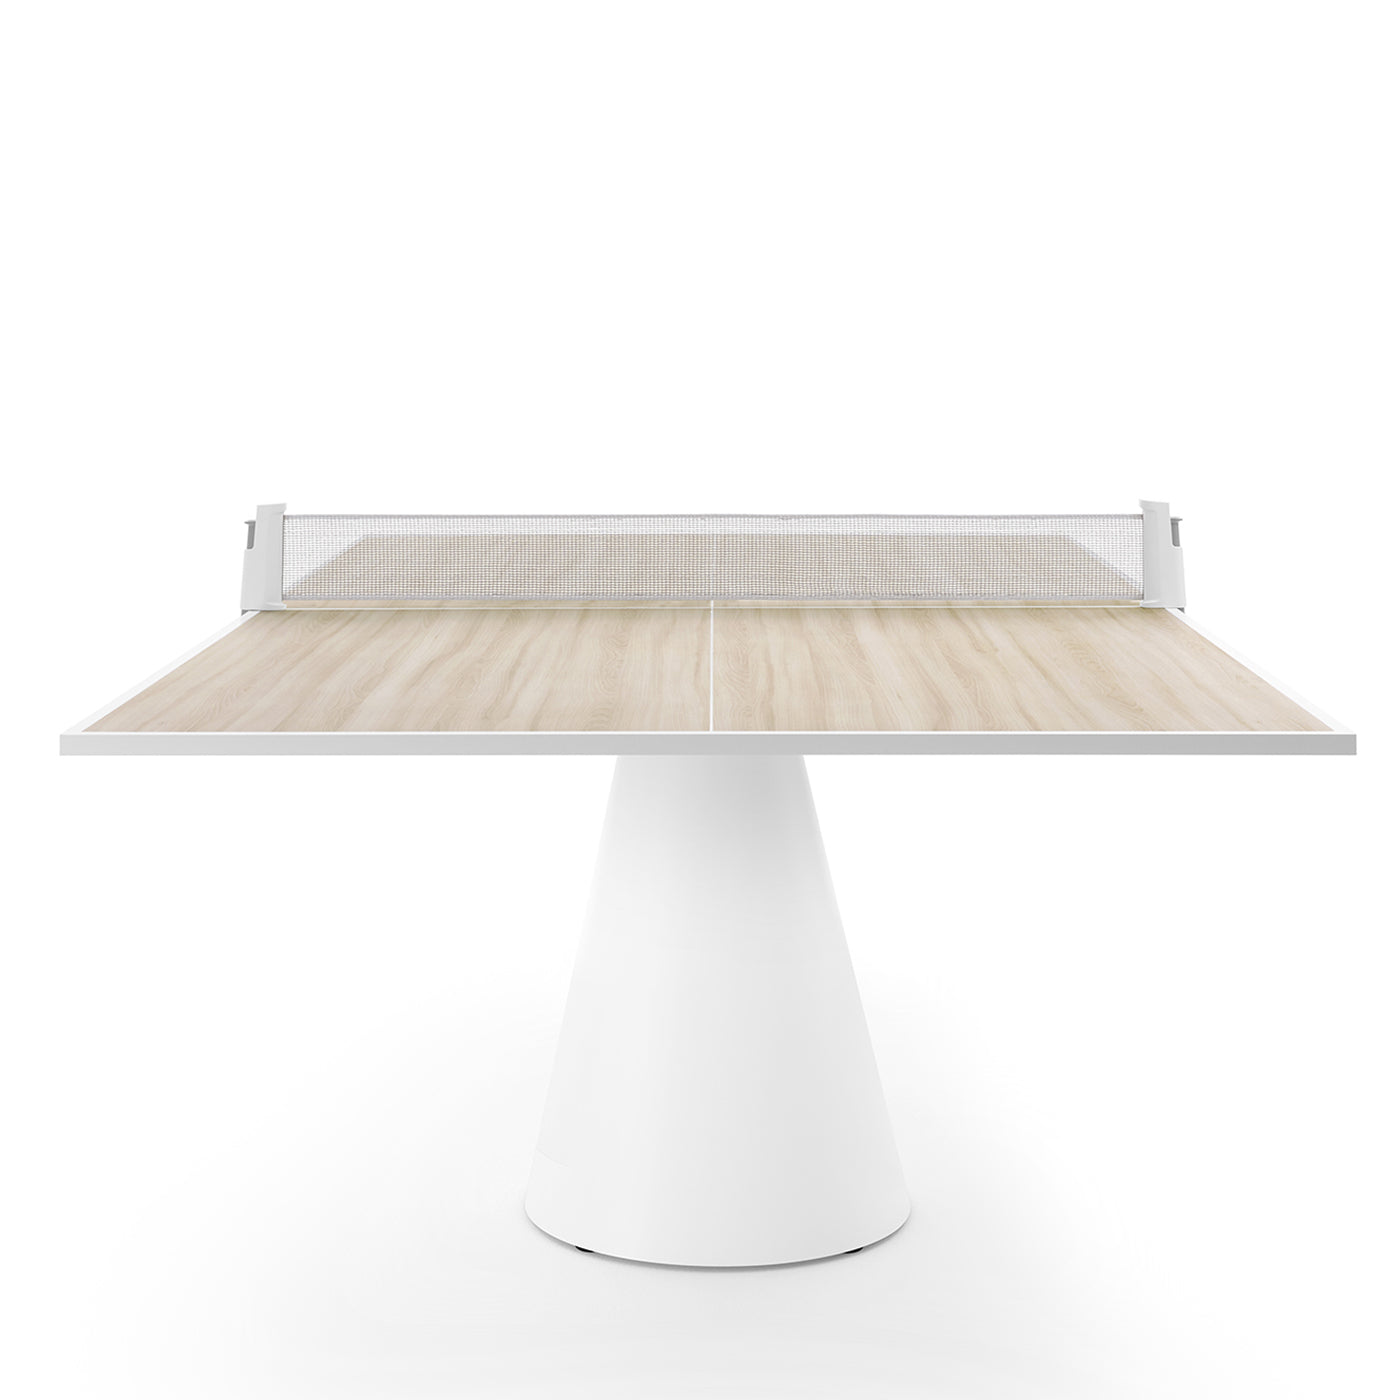 Dada Ping Pong Tisch von Basaglia + Rota Nodari - Alternative Ansicht 2